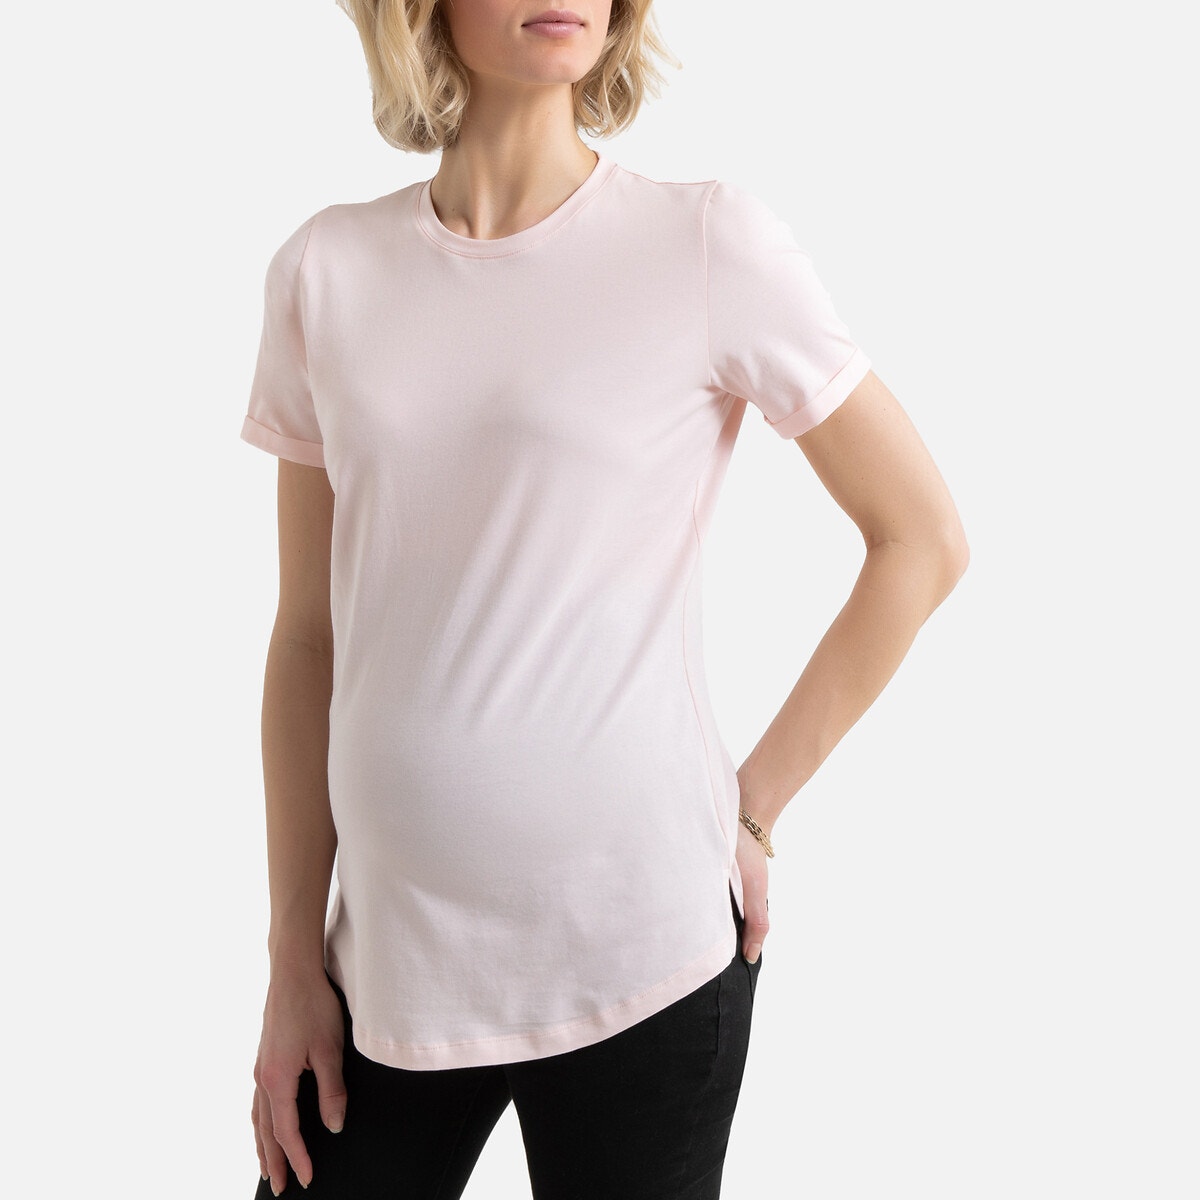 Κοντομάνικη μπλούζα εγκυμοσύνης ΓΥΝΑΙΚΑ | Ρούχα Εγκυμοσύνης | Μπλούζες & Πουκάμισα | T-shirts